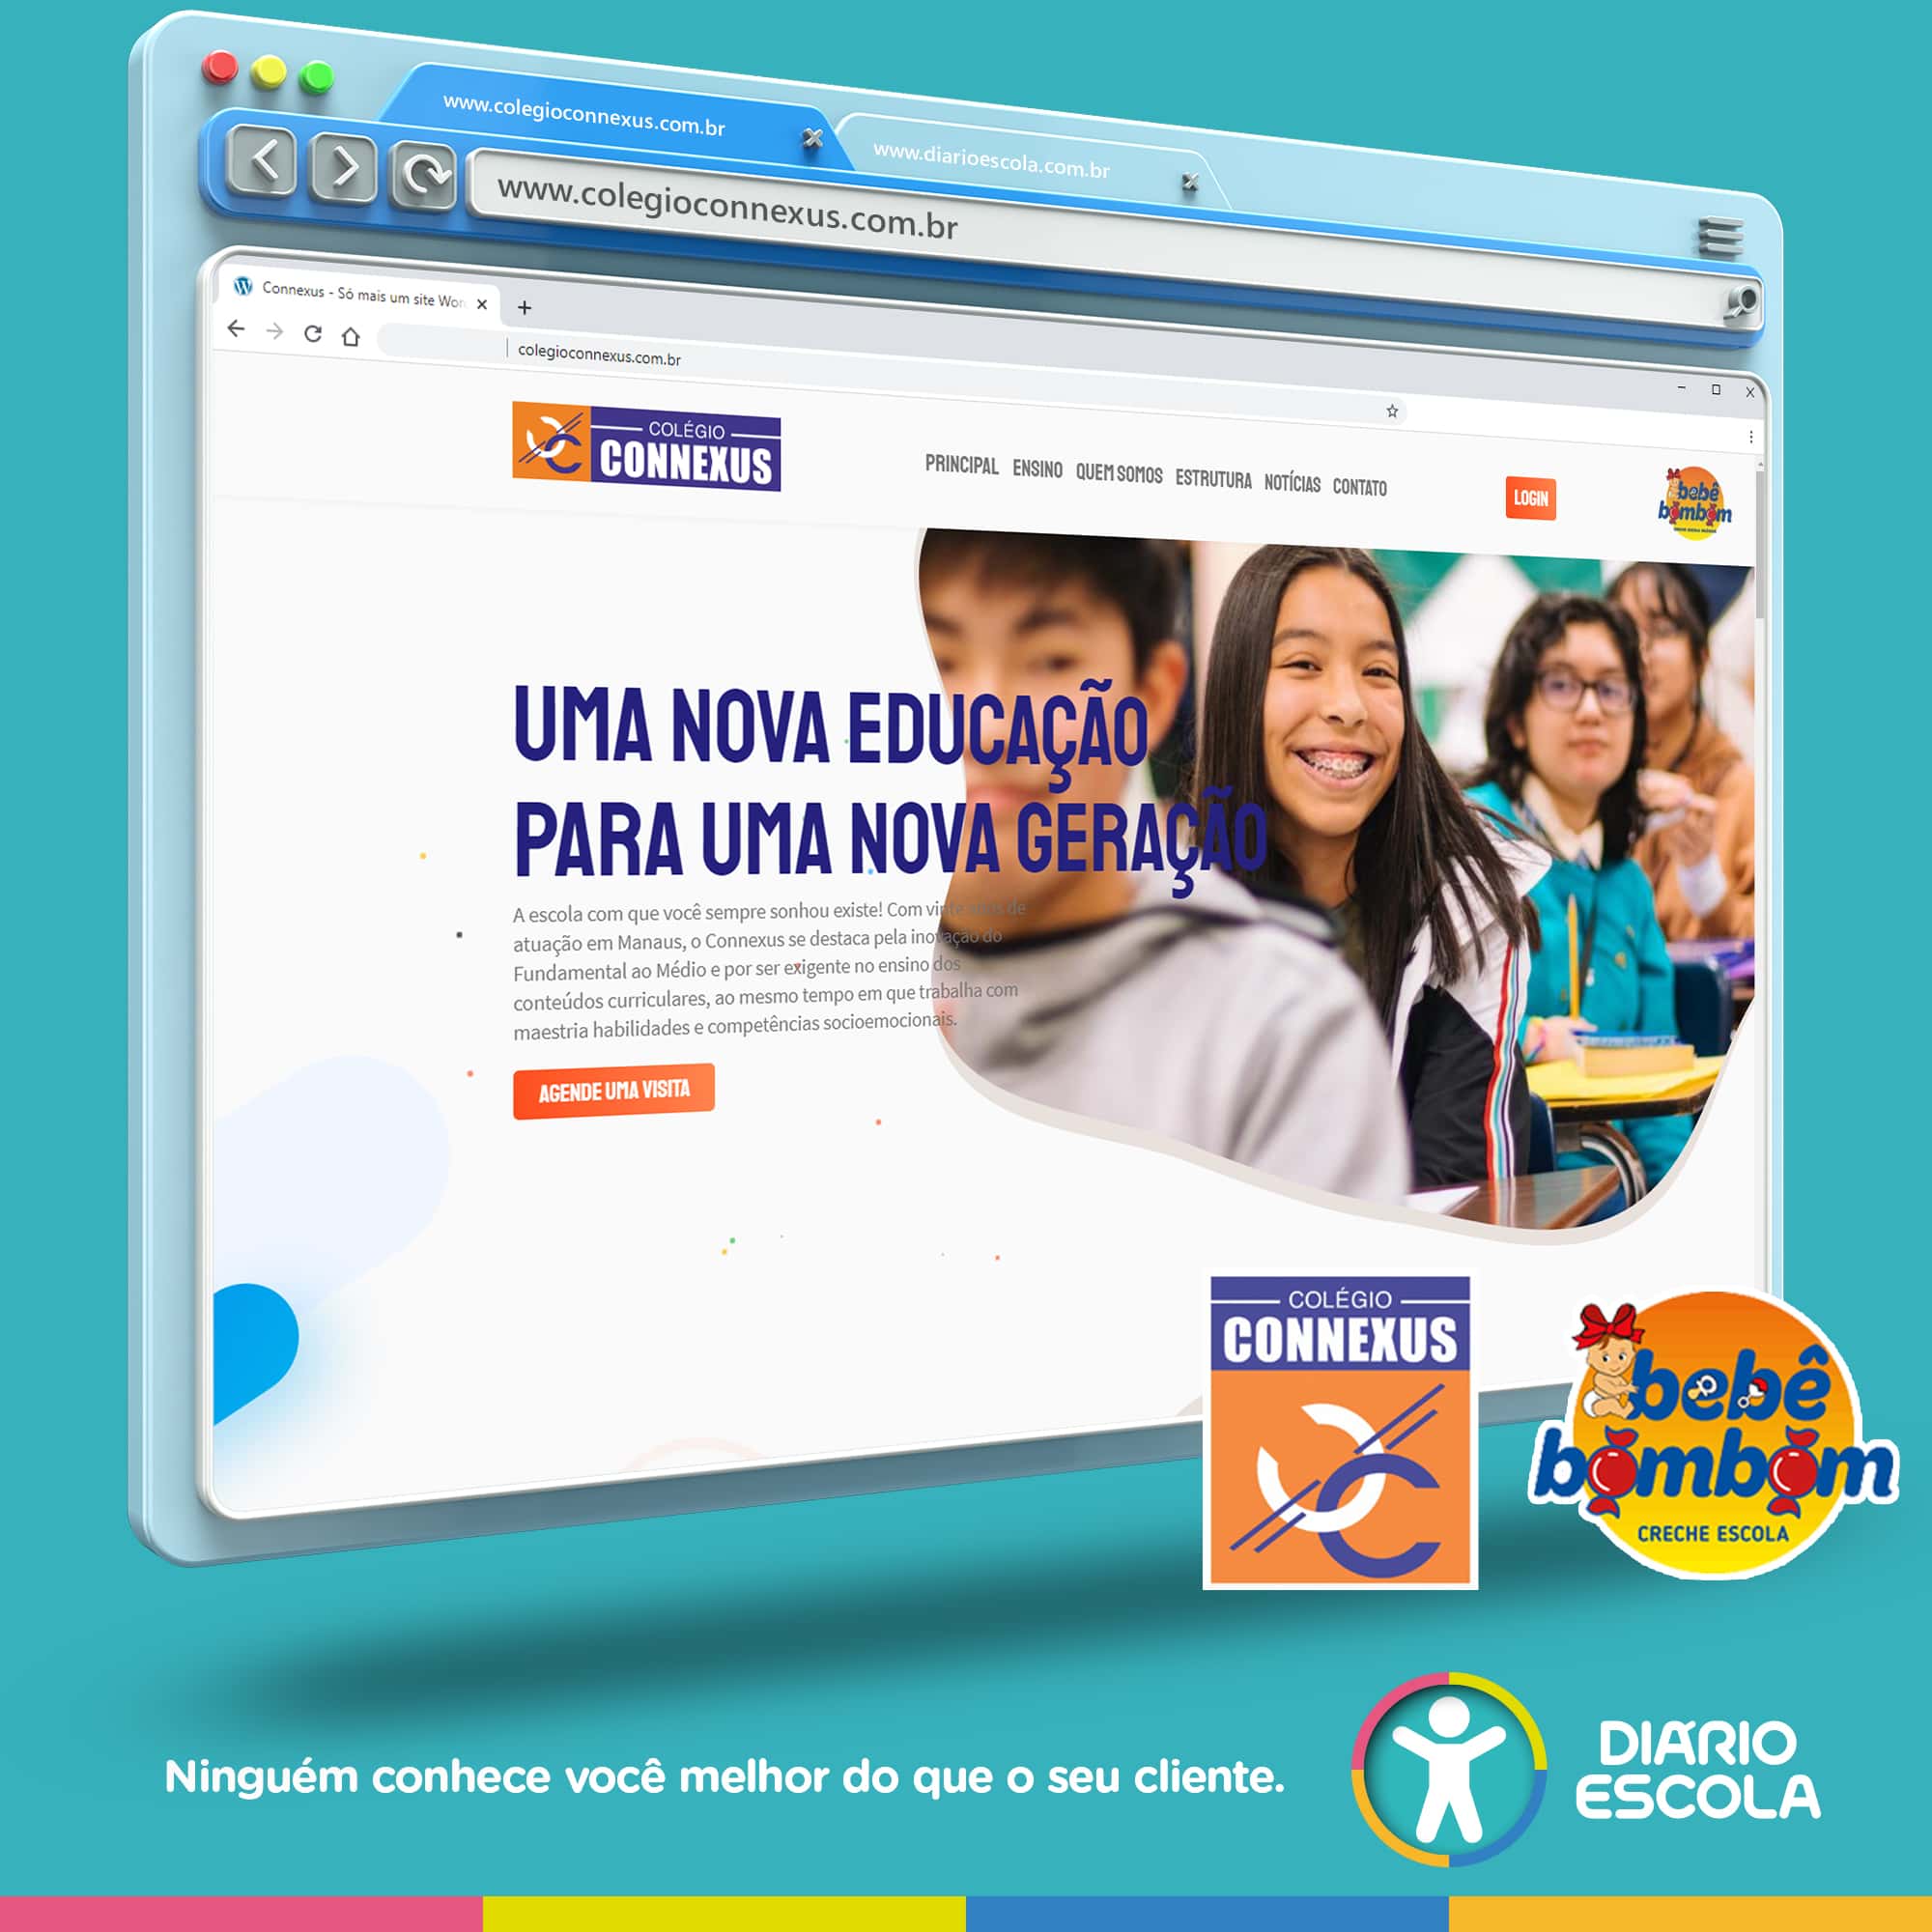 Colégio Conexxus, creche-escola Bebê Bombom e a parceria de sucesso com o Diário Escola